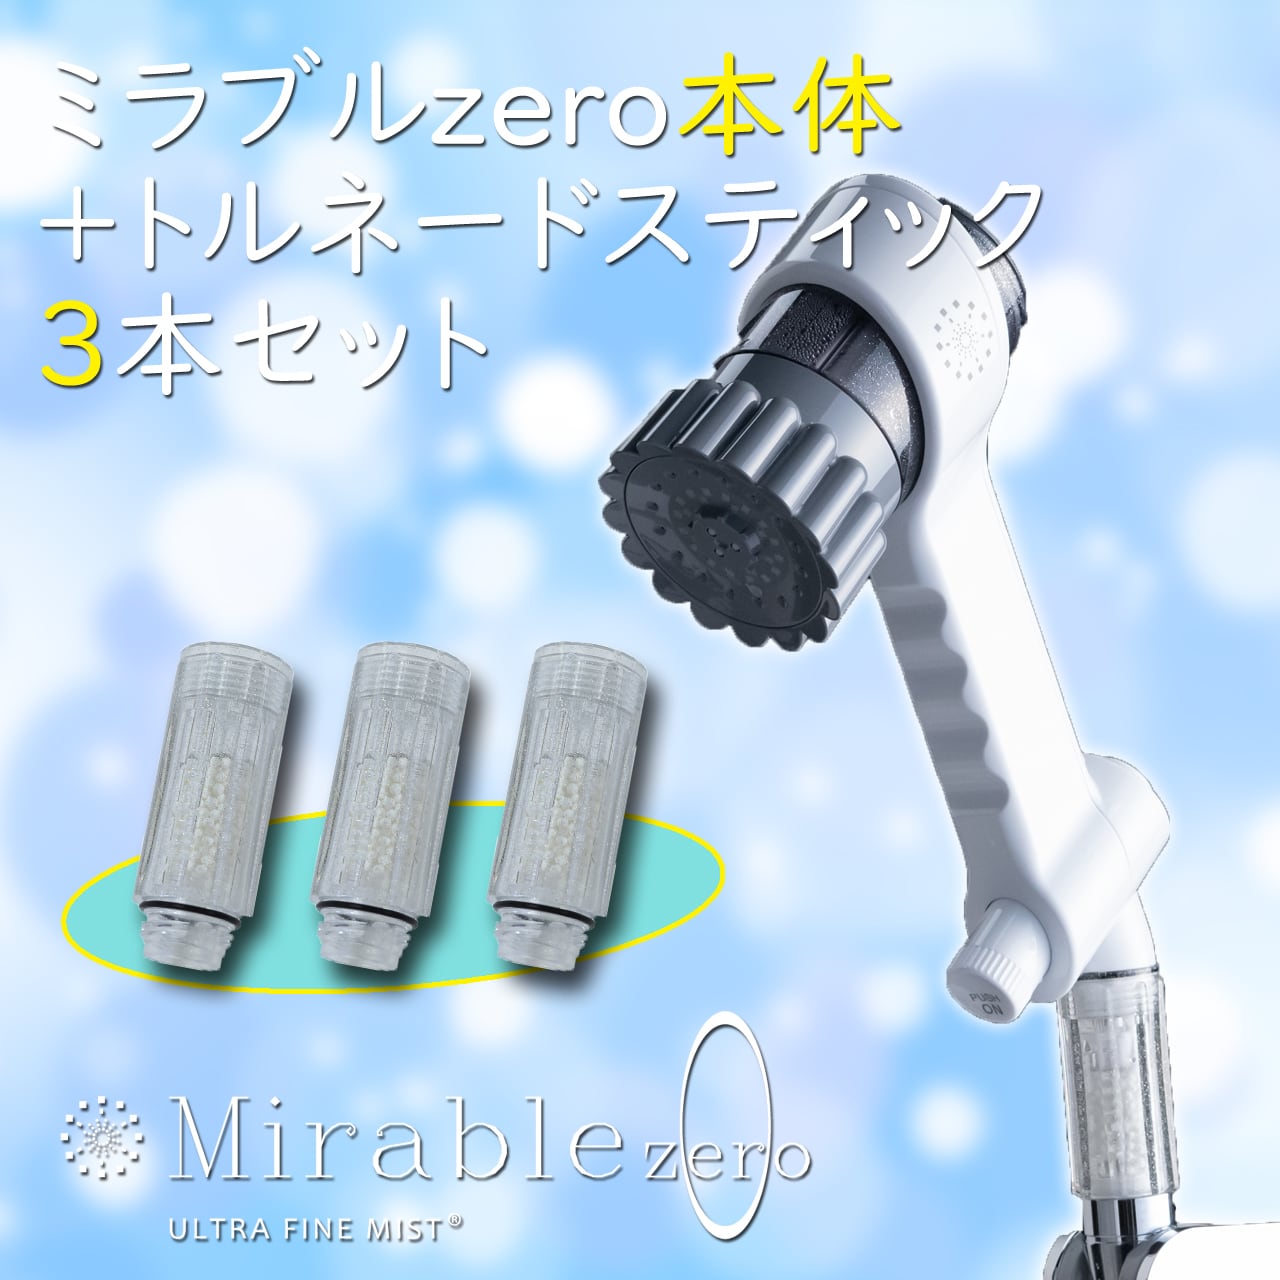 【セット商品】ミラブルzero+トルネードスティック3本セット | 快適シャワードットコム powered by BASE